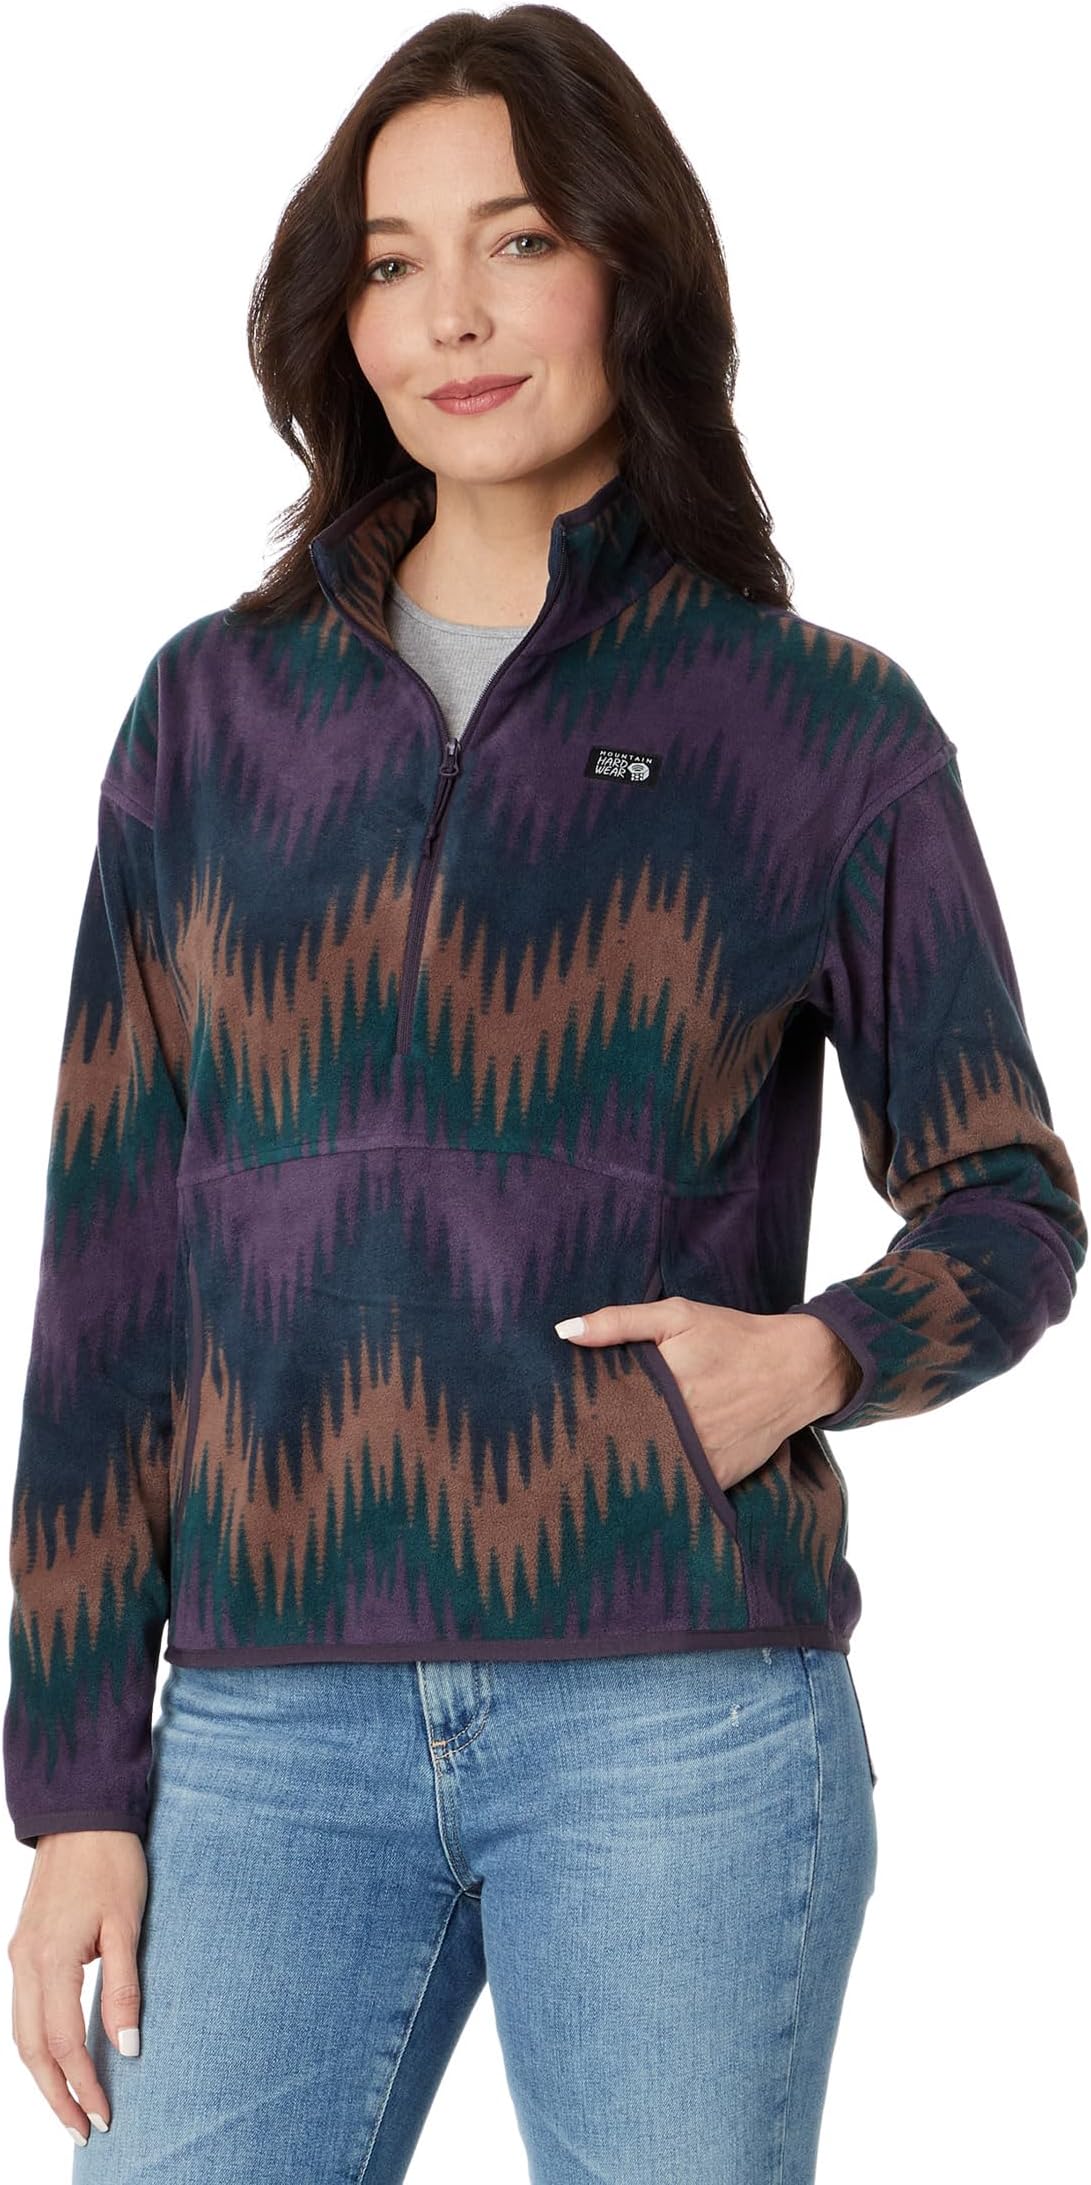 Новинка пуловера Microchill Mountain Hardwear, цвет Blurple Zigzag Print шапочка для заправки mountain hardwear цвет blurple zig zag